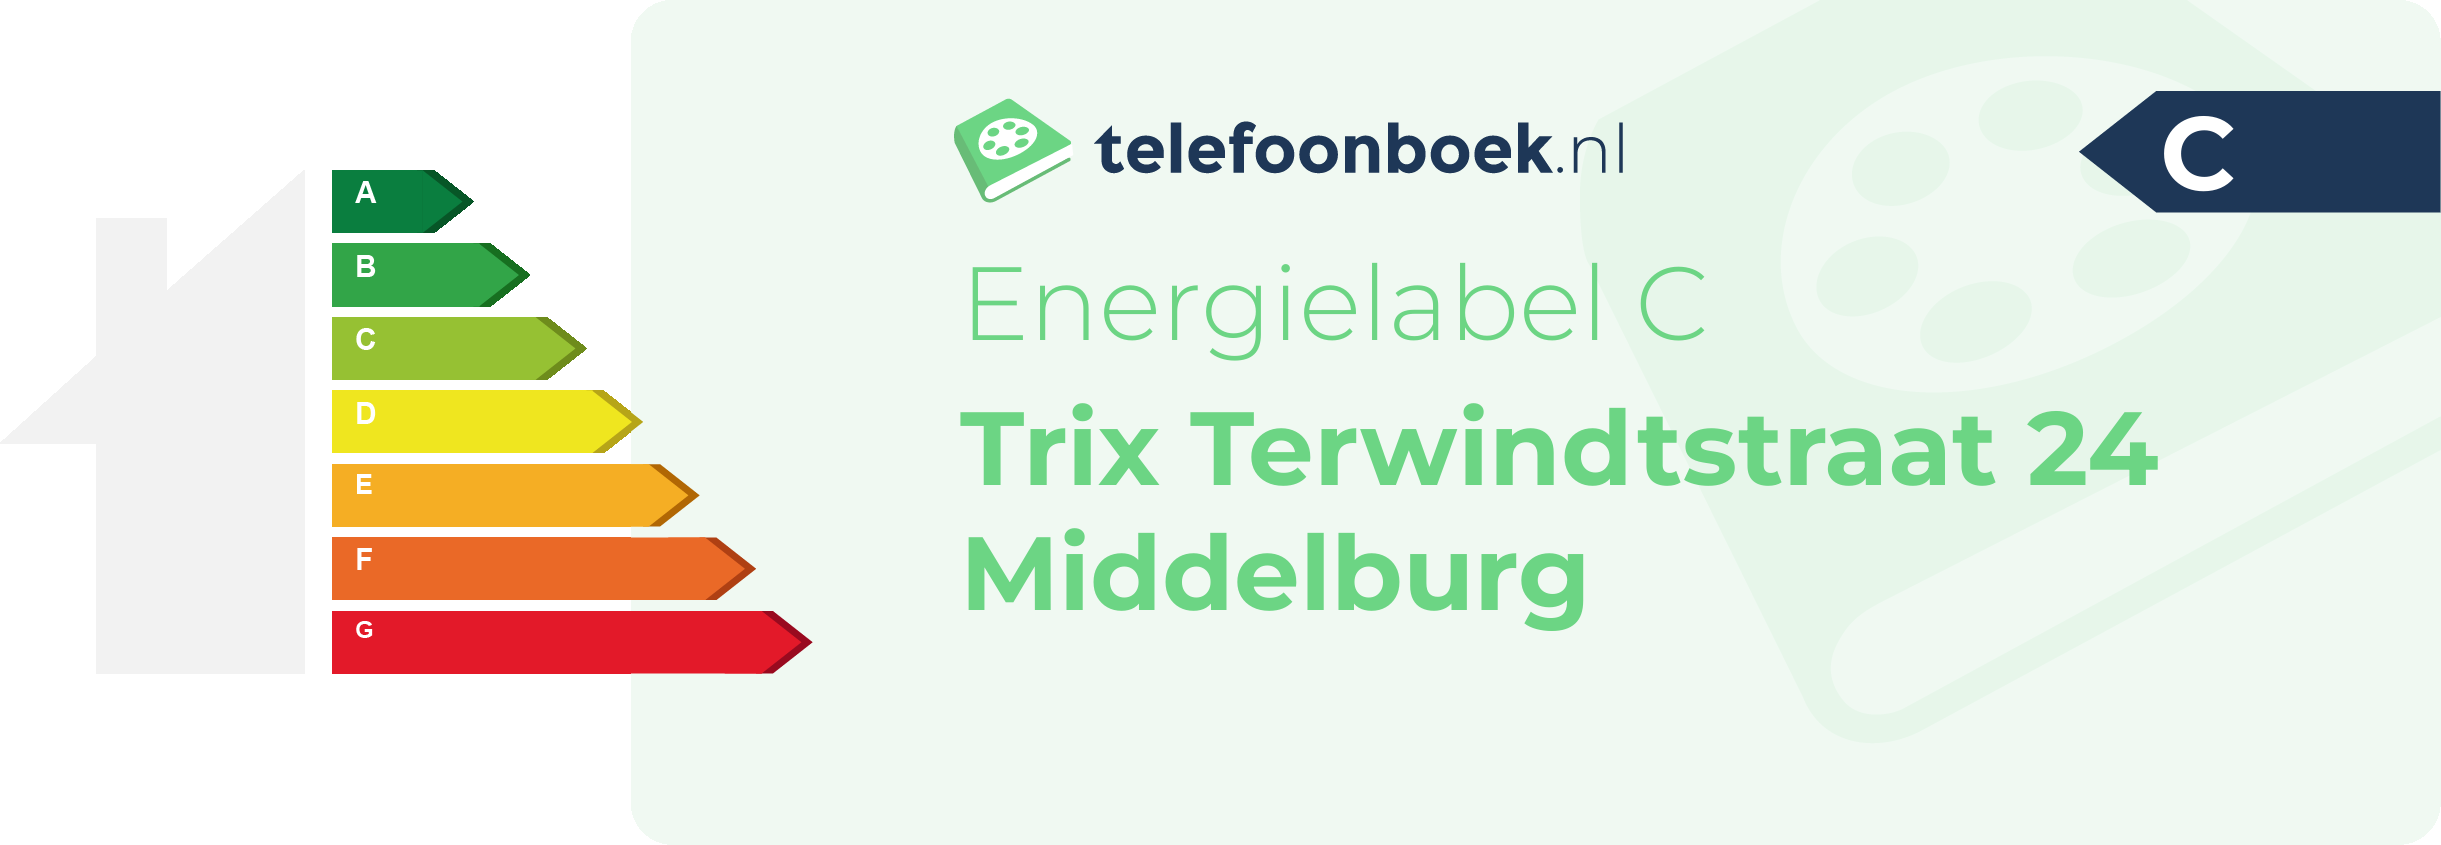 Energielabel Trix Terwindtstraat 24 Middelburg